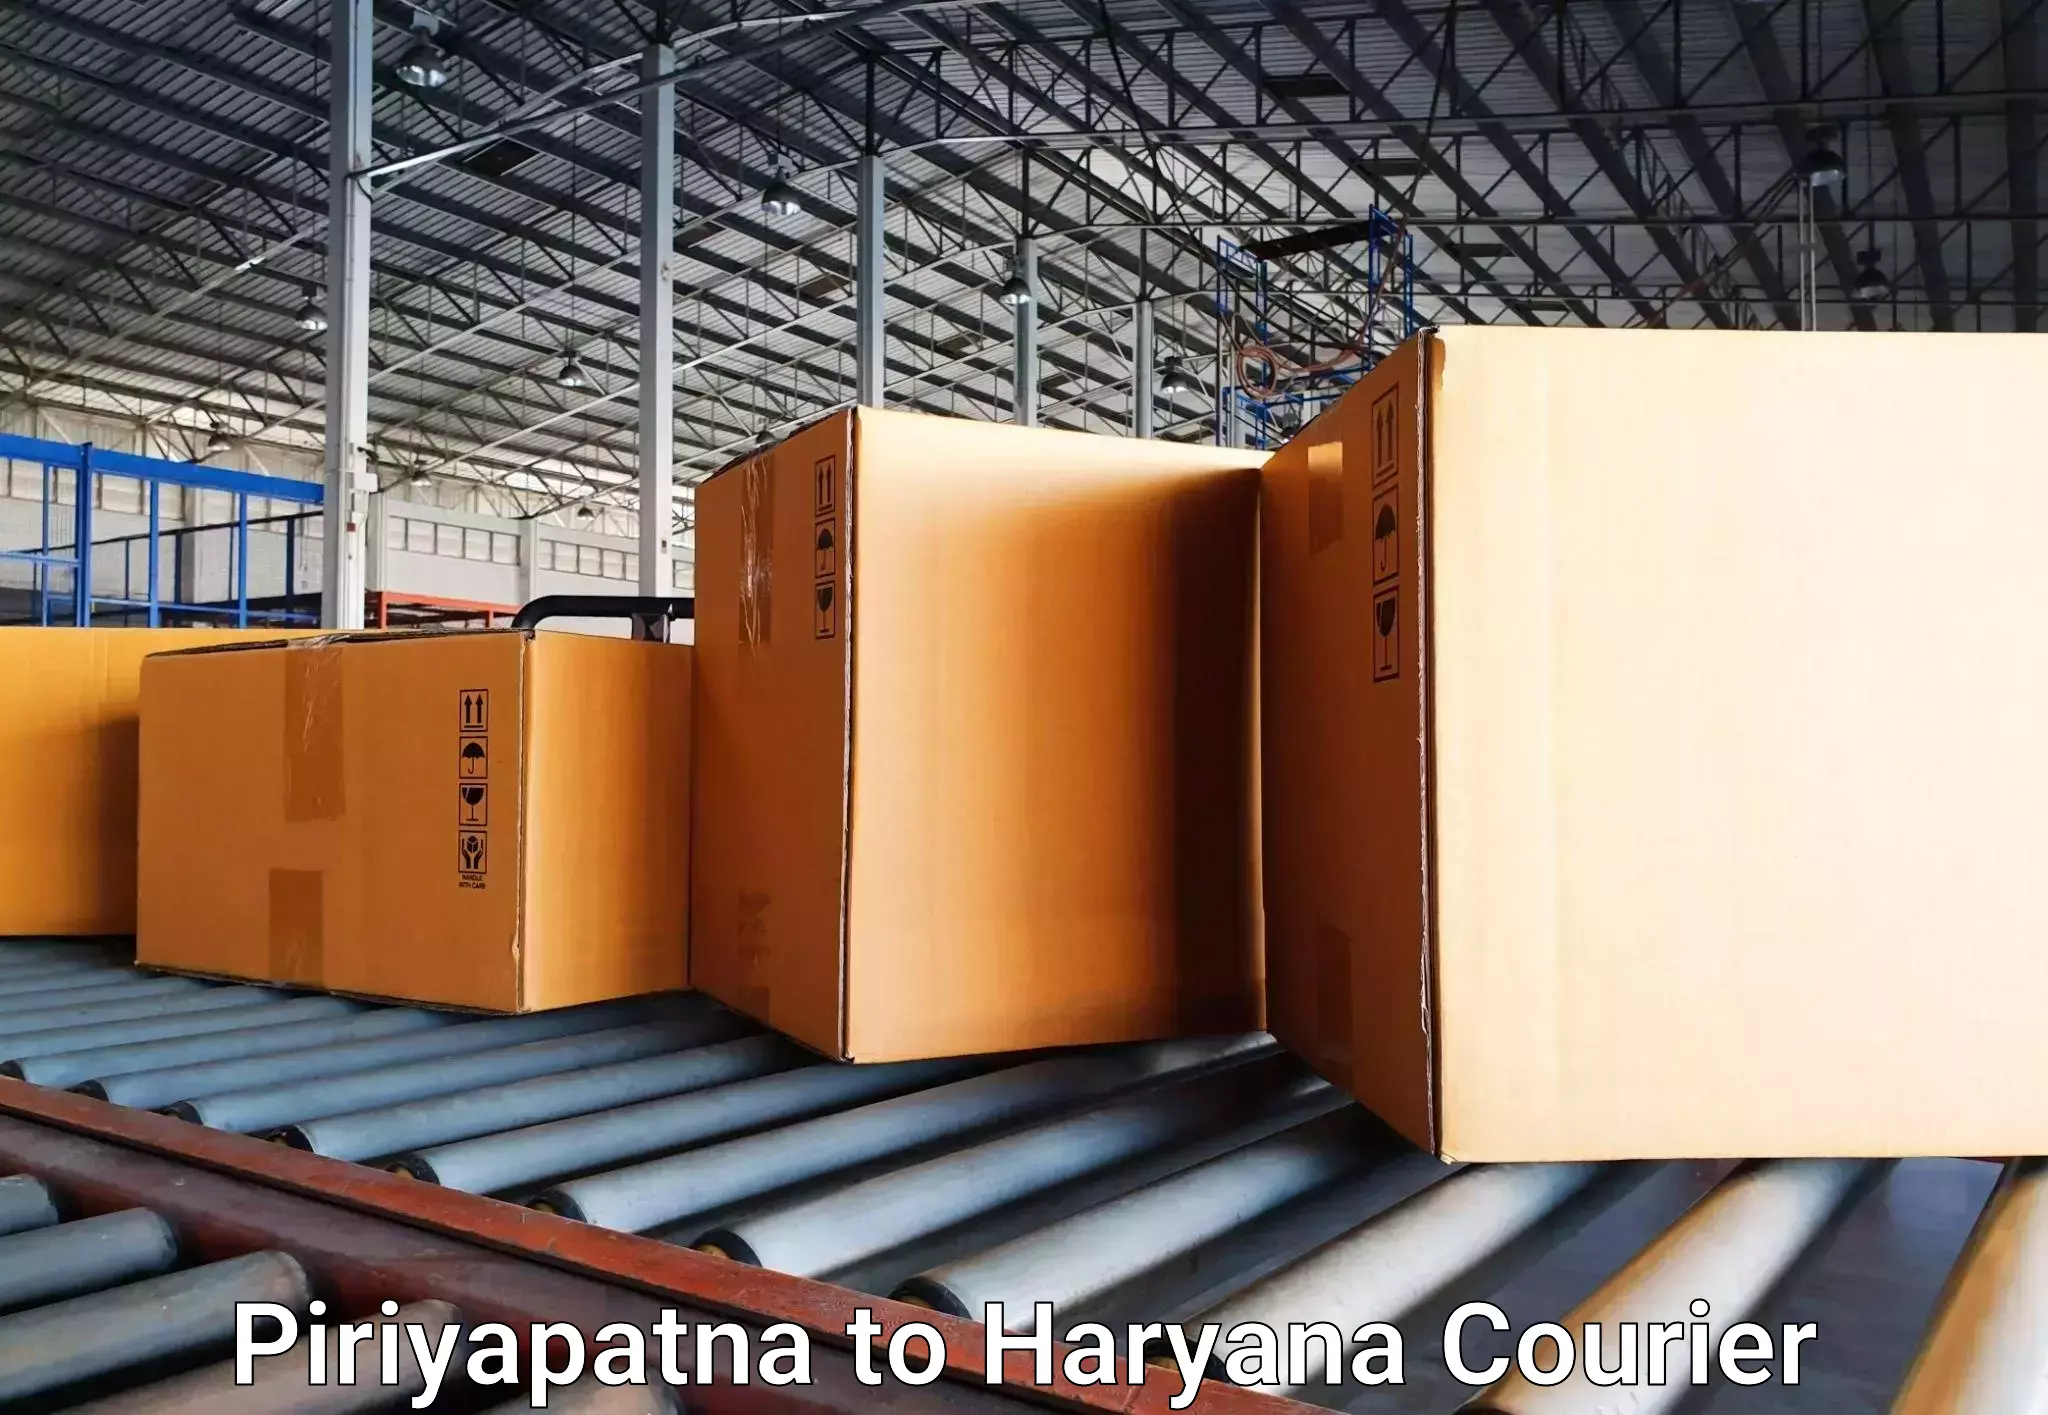 Luggage shipment specialists Piriyapatna to Rewari